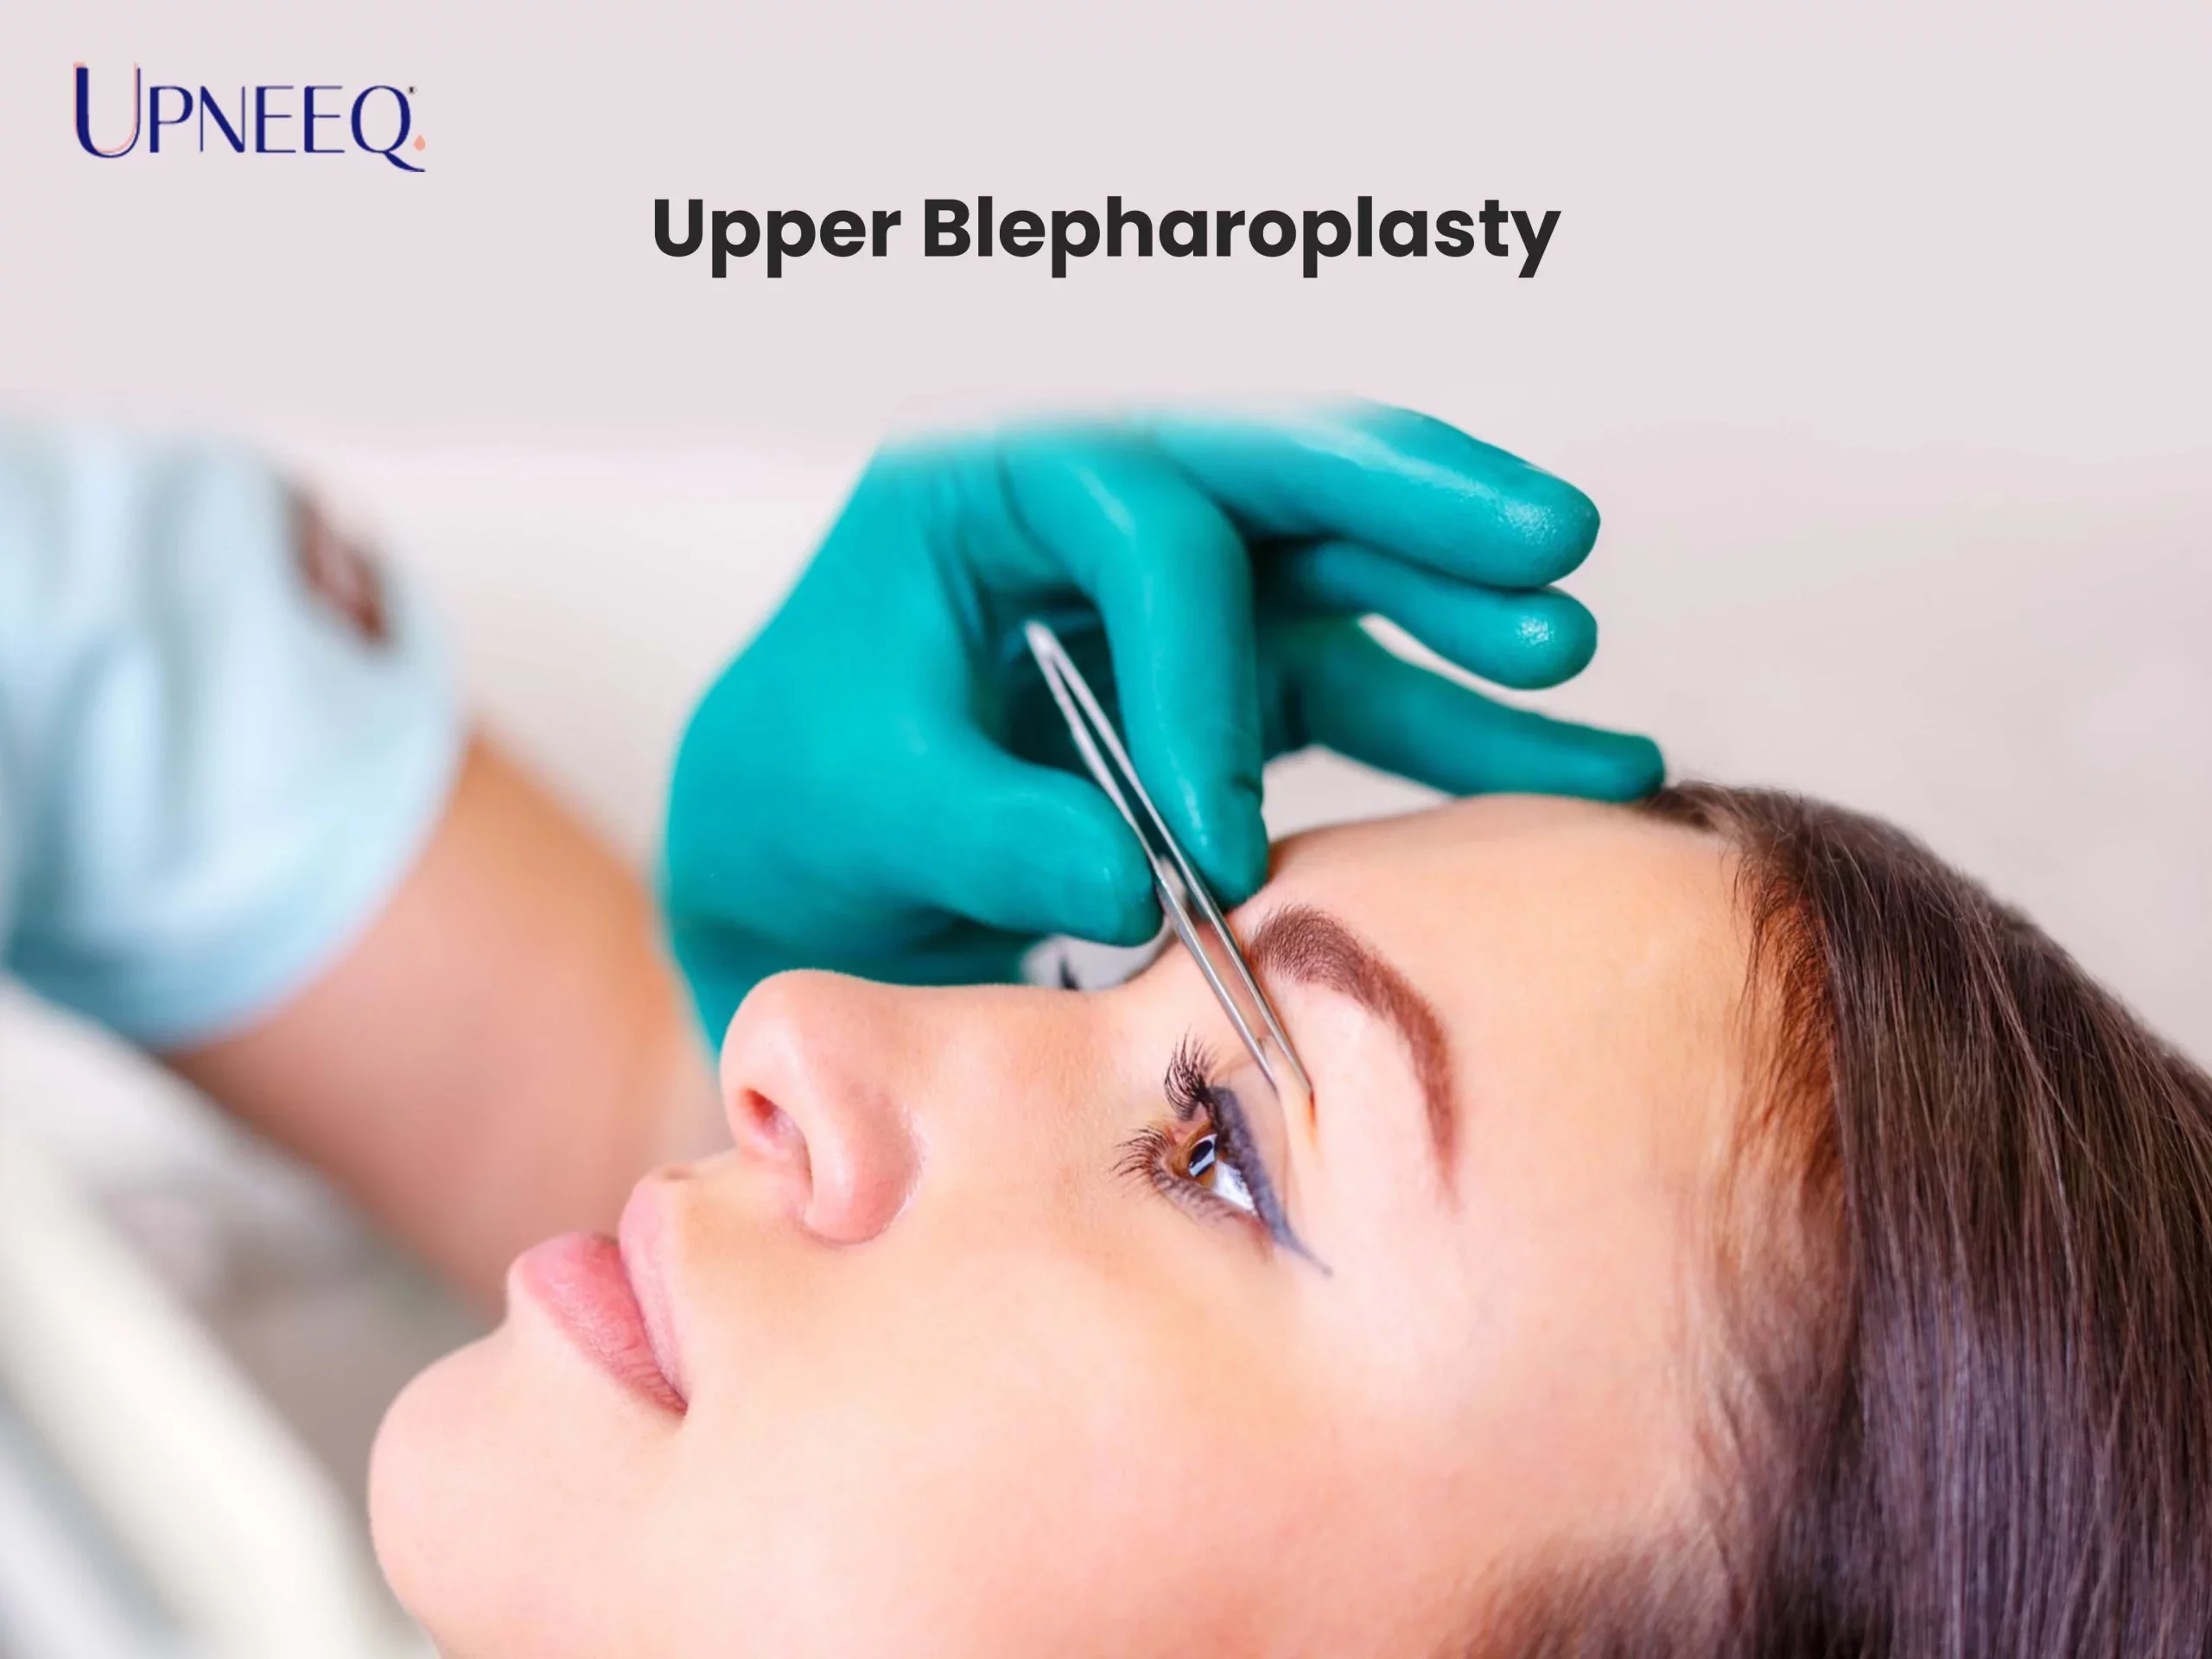 Upper Blepharoplasty